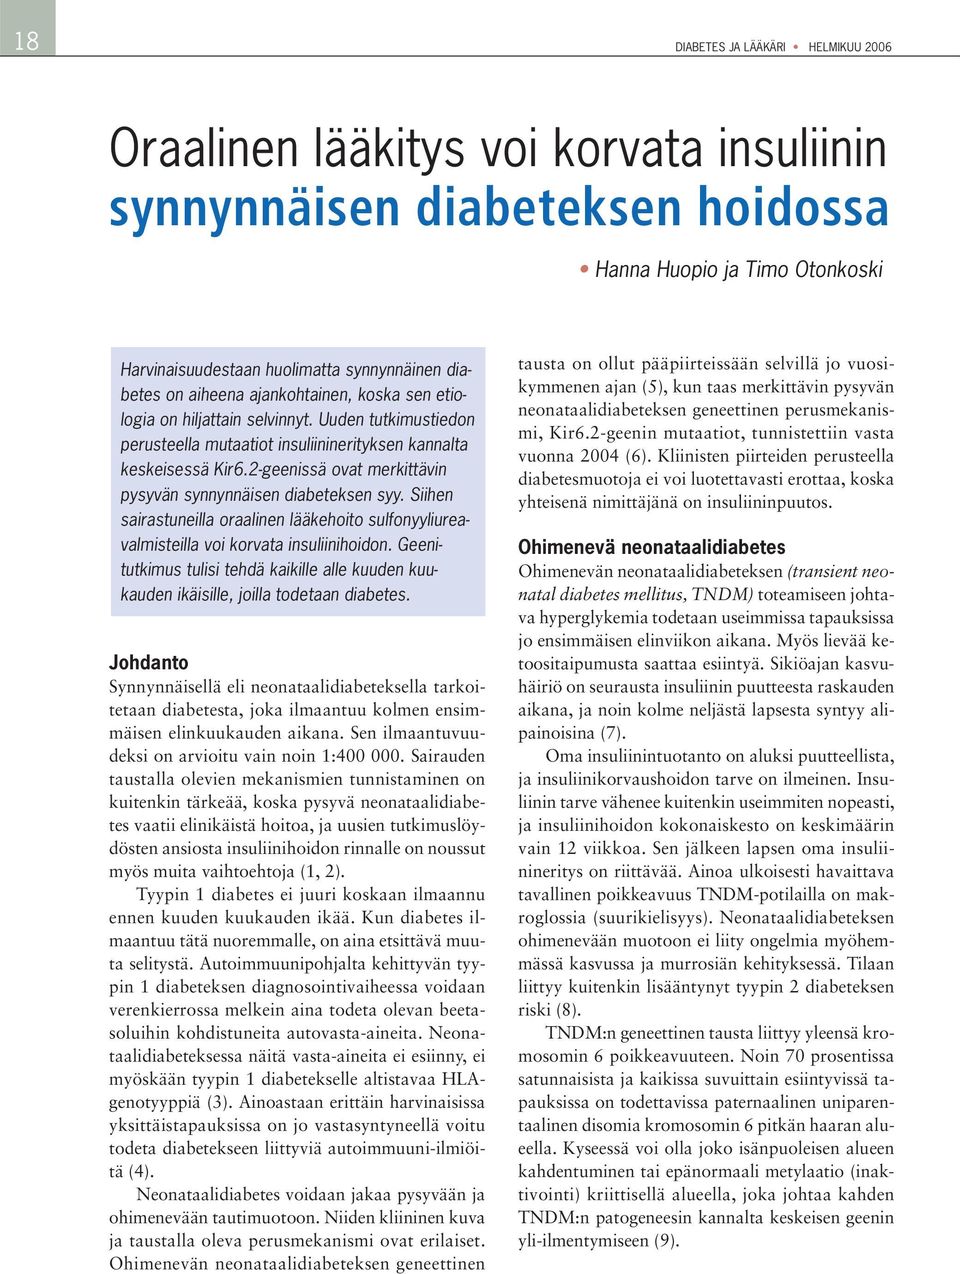 2-geenissä ovat merkittävin pysyvän synnynnäisen diabeteksen syy. Siihen sairastuneilla oraalinen lääkehoito sulfonyyliureavalmisteilla voi korvata insuliinihoidon.